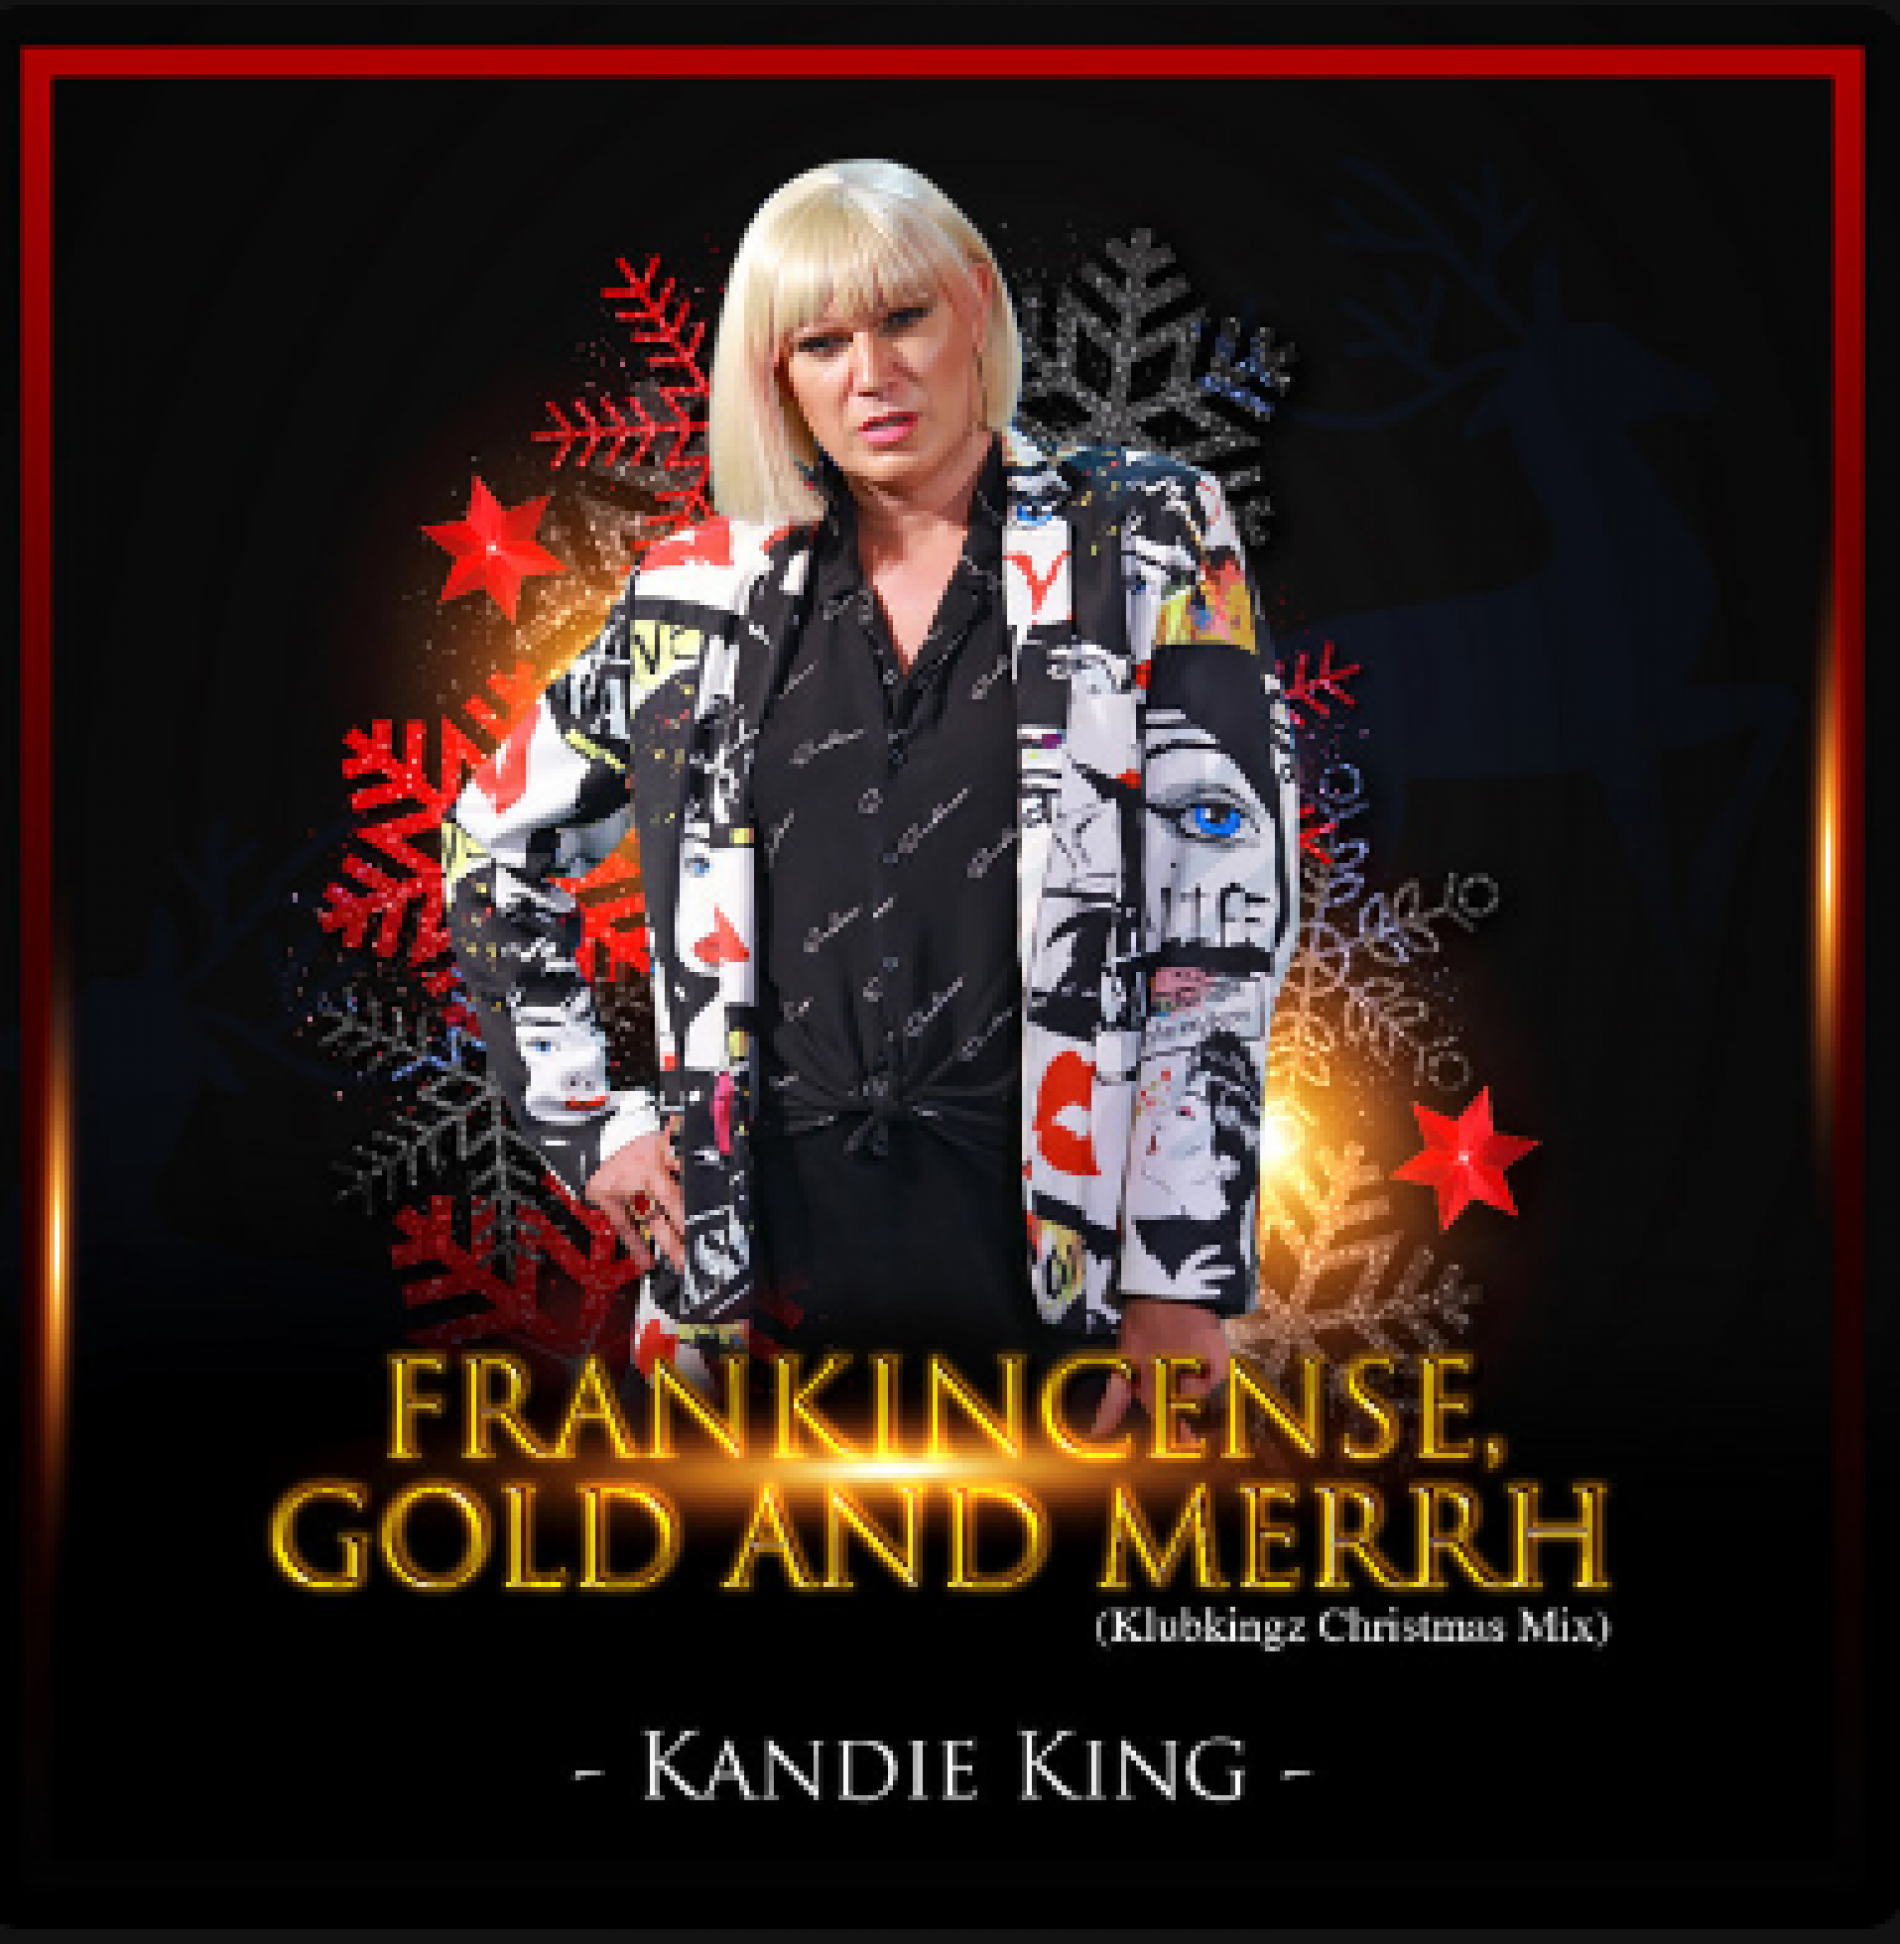 New Music : Kandie King – Frankincense, Gold & Merrh (Klubkingz Christmas Mix)